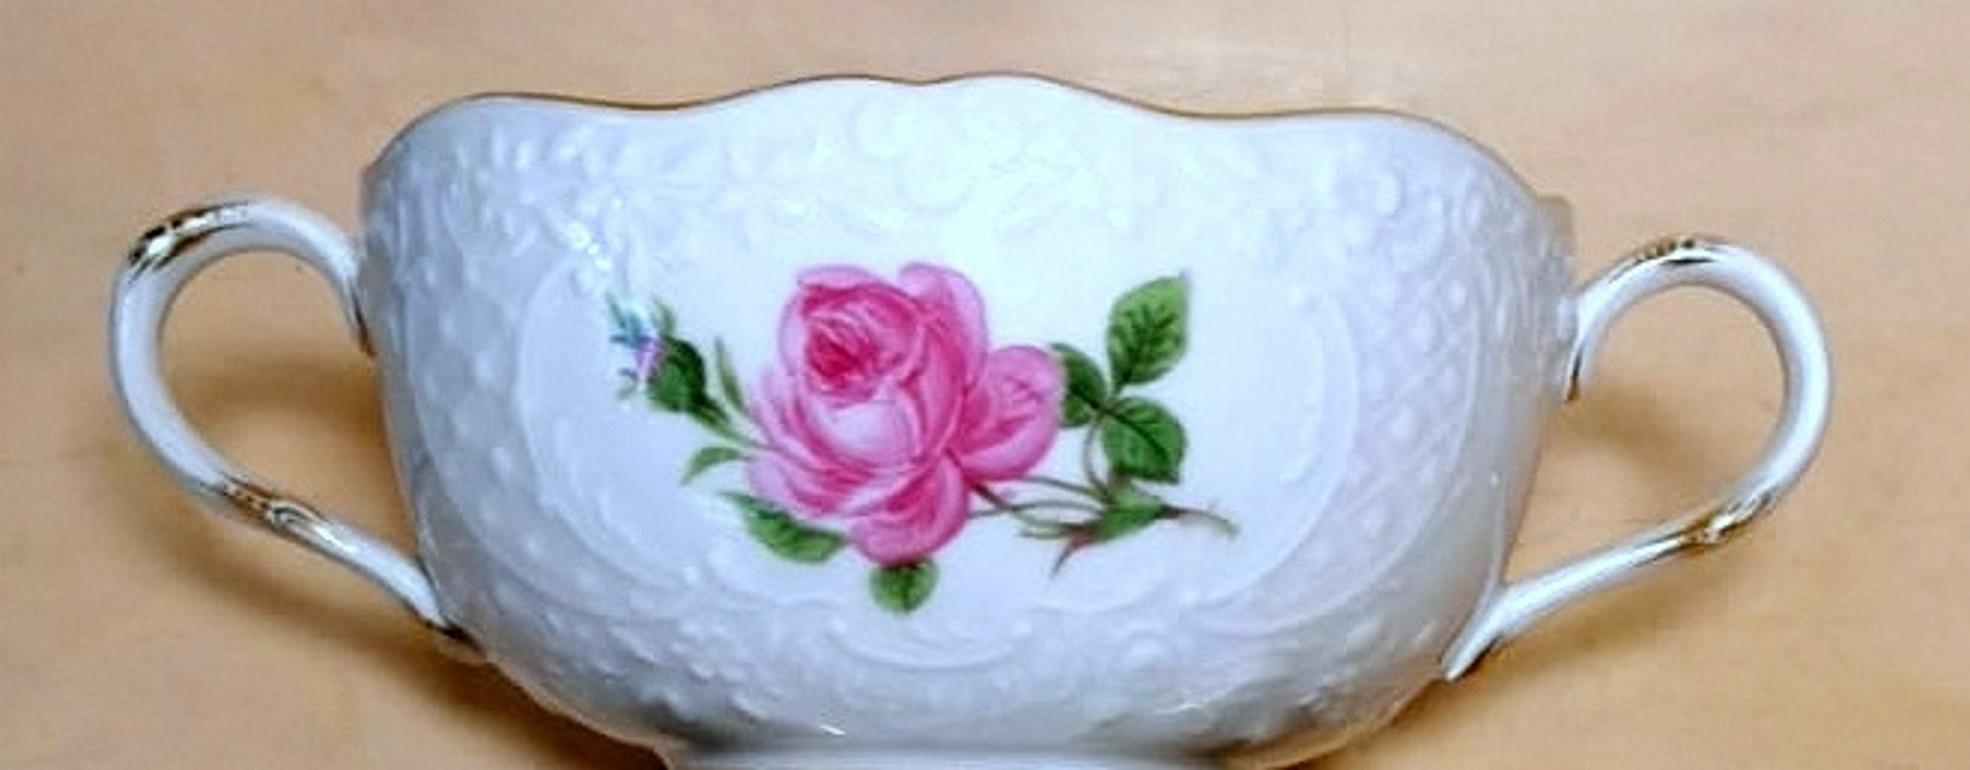 Meissener Porzellan, seltene Rosenbrot-Tasse, Service und geprägte Dekorationen, 12 Tassen im Angebot 2